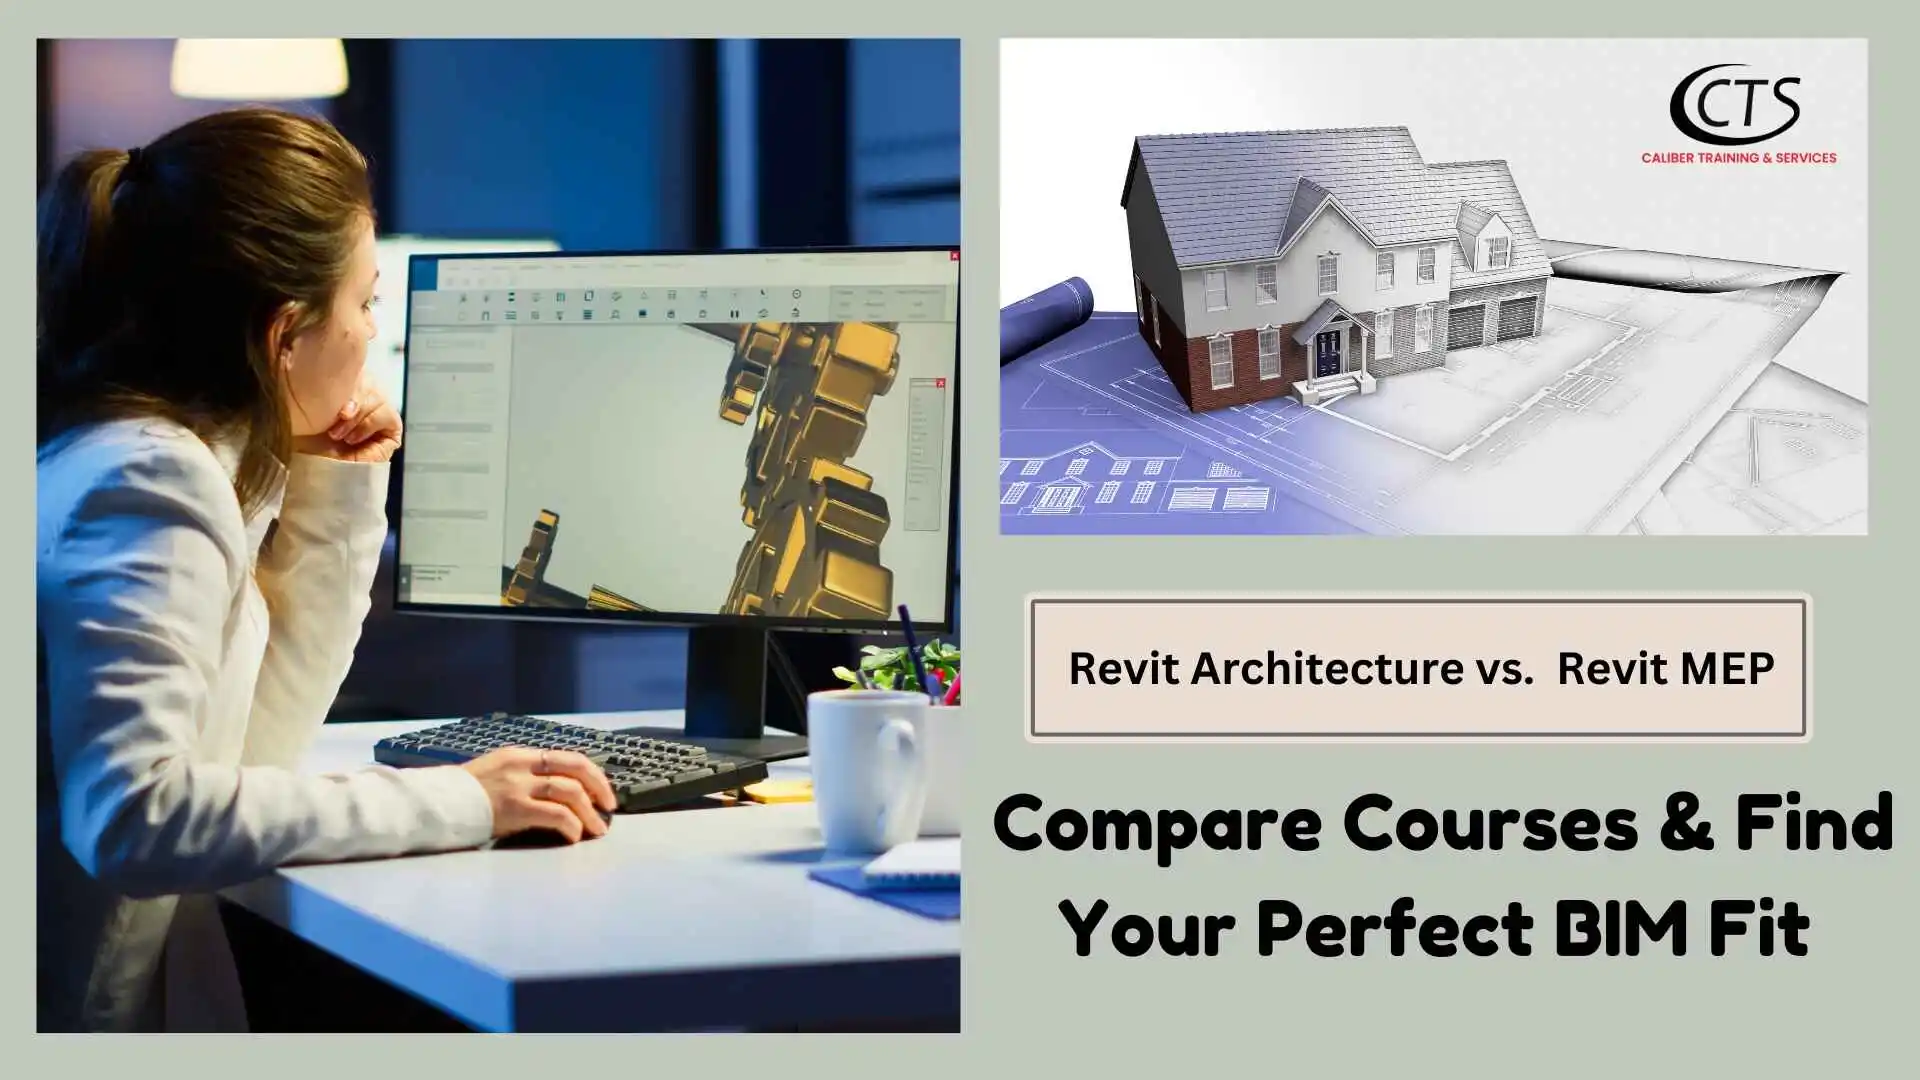 Revit Architecture vs. Revit MEP: Compare Courses & Find Your Perfect BIM Fit